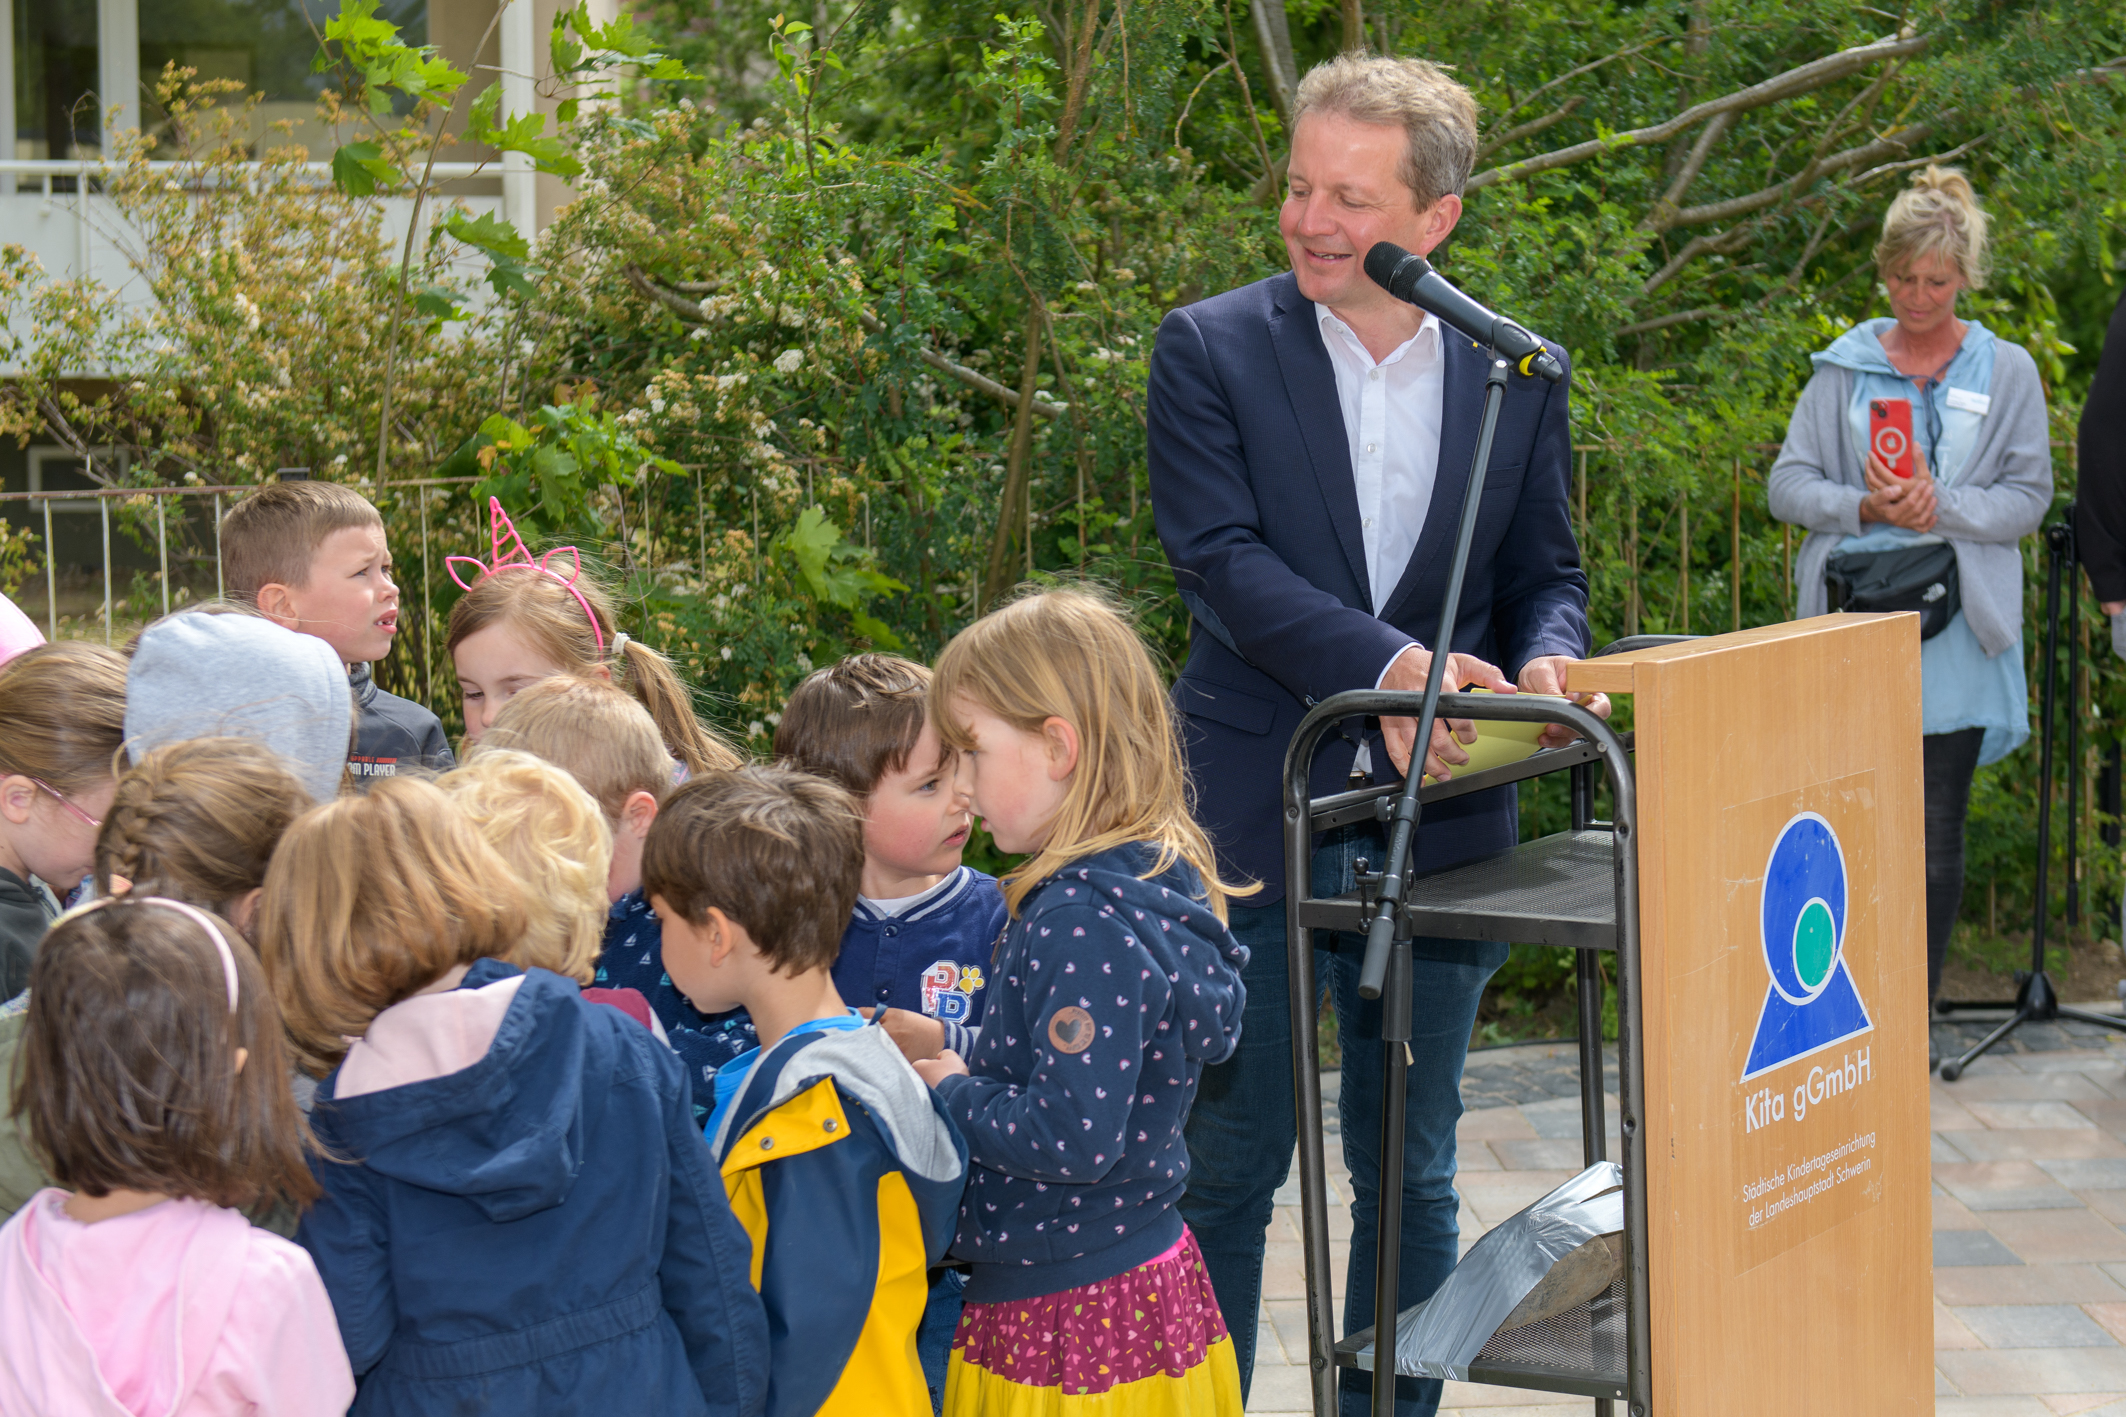 Auch Oberbürgermeister Dr. Rico Badenschier gratulierte der Kita gGmbH und den Kindern zur Eröffnung des neuen Gänseblümchen-Gebäudes